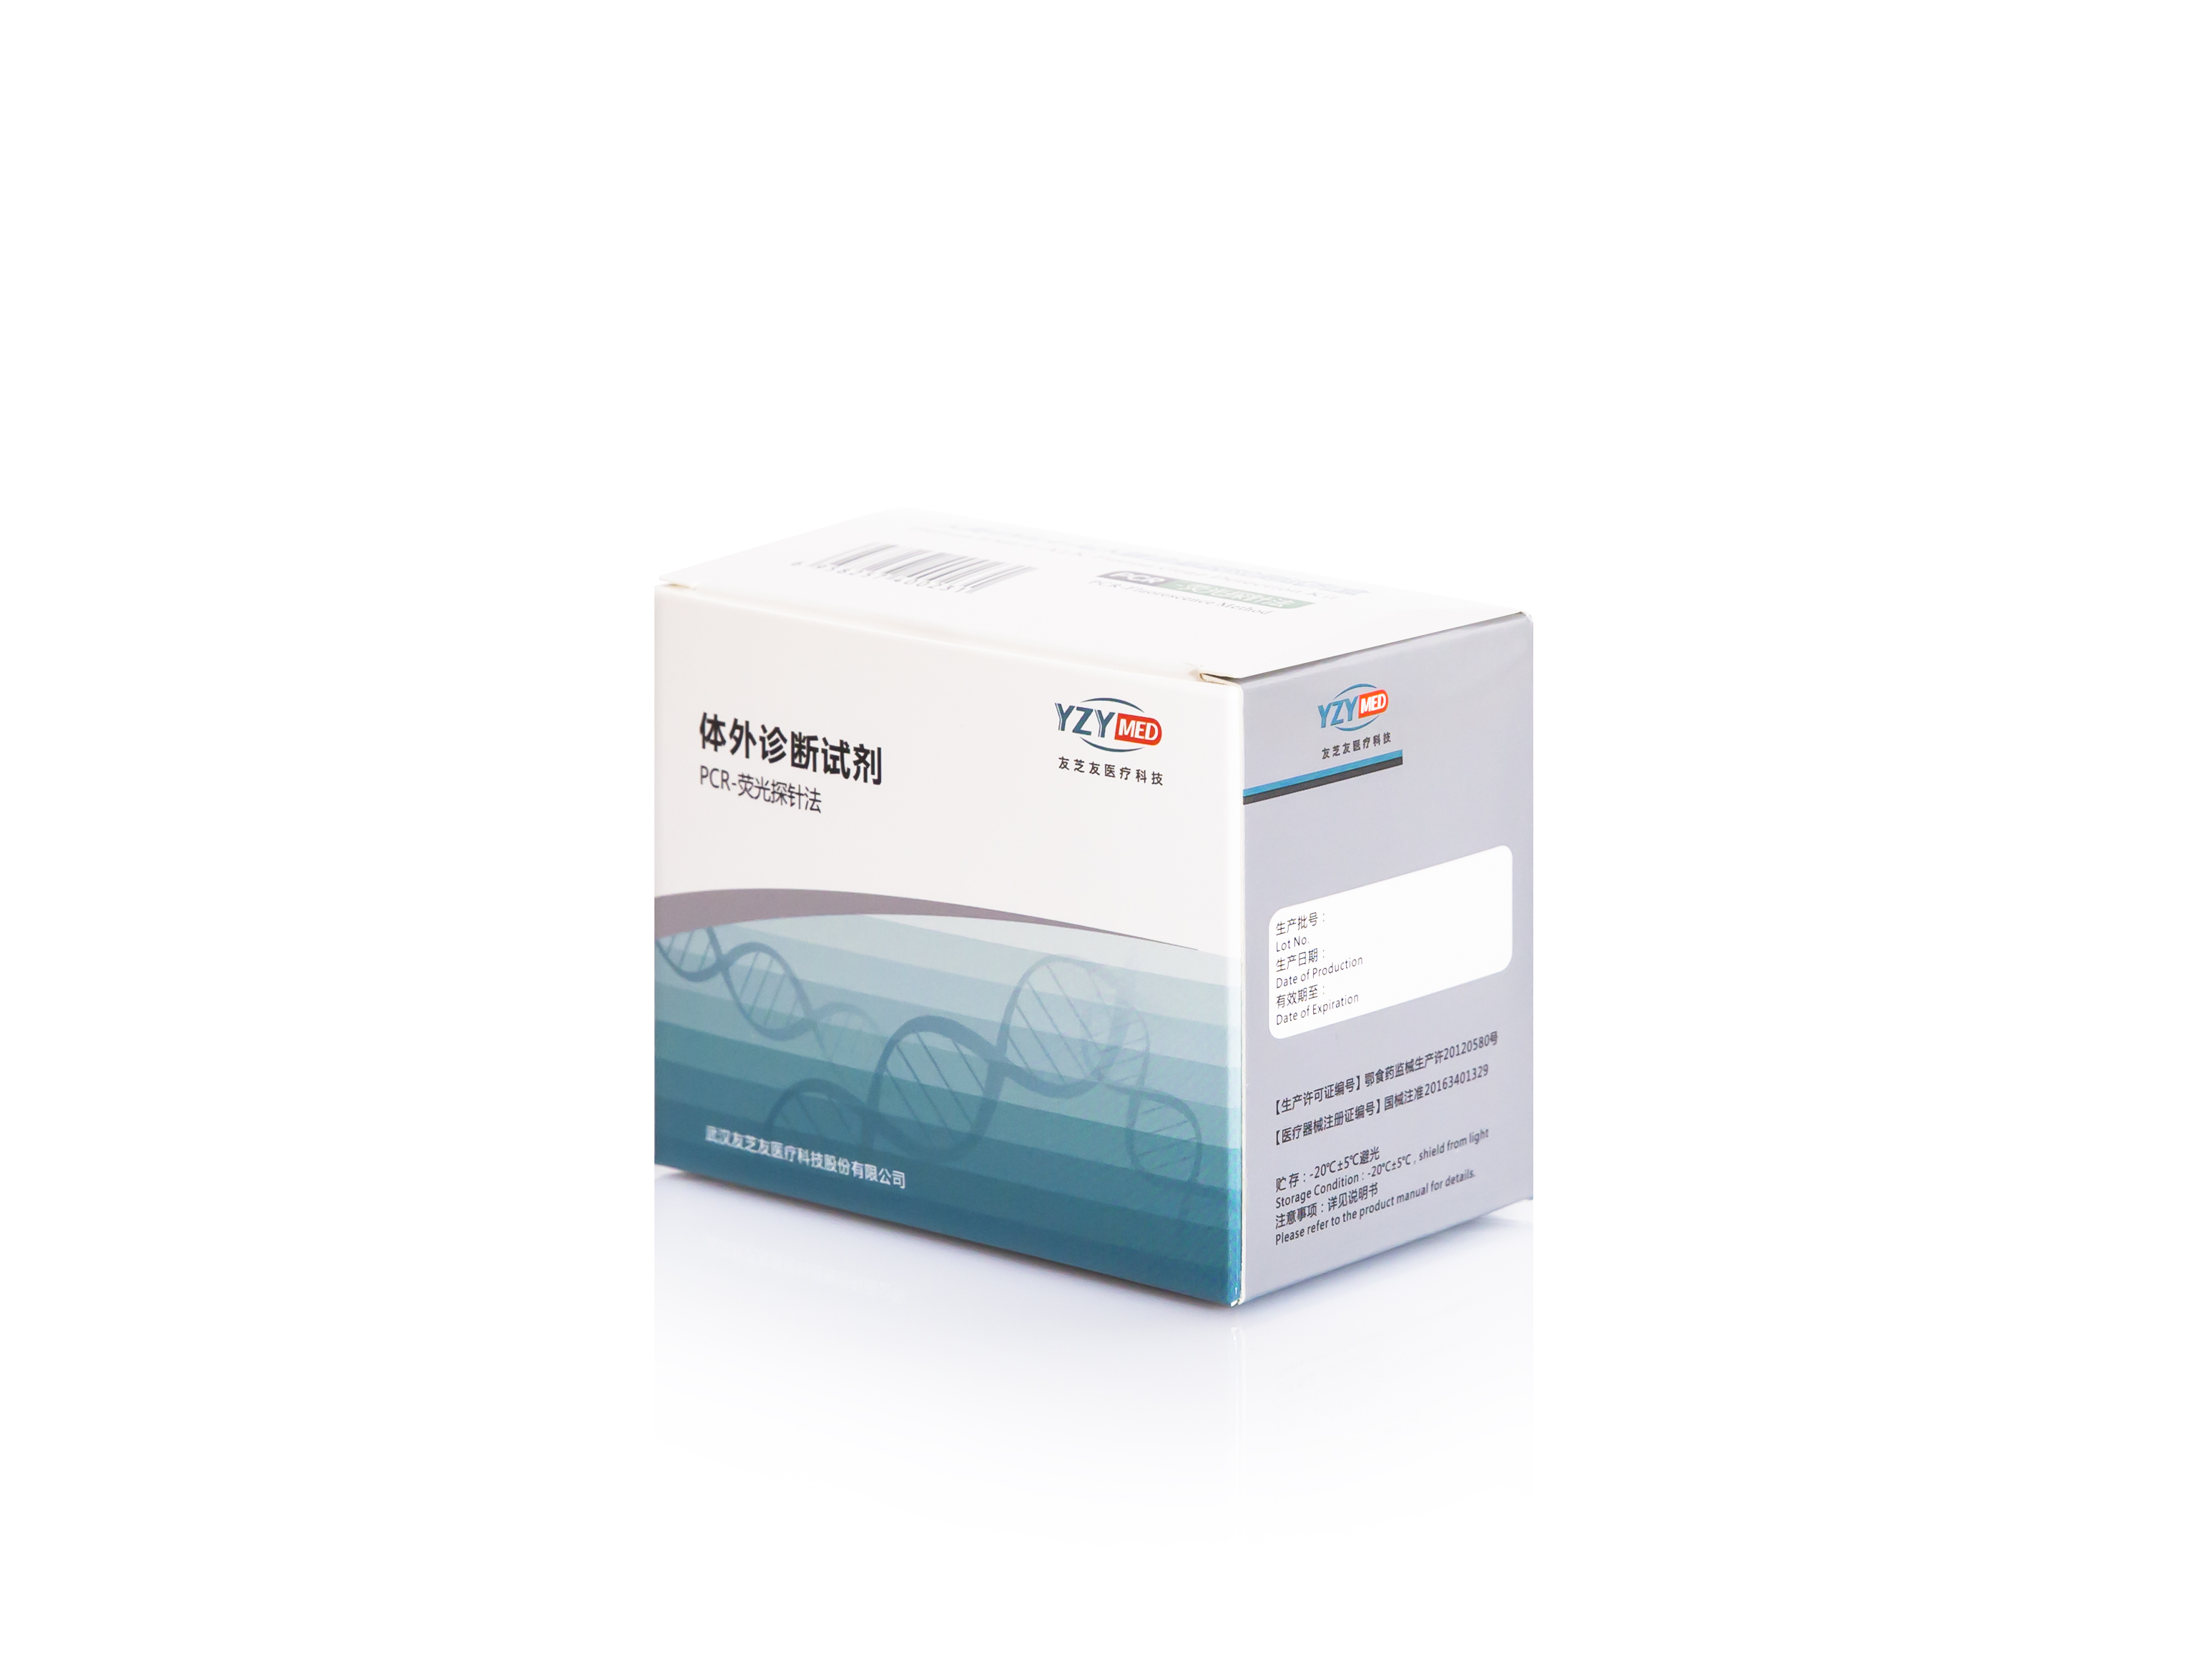 【友芝友】人类EML4-ALK融合基因检测试剂盒 (PCR-荧光探针法)-云医购